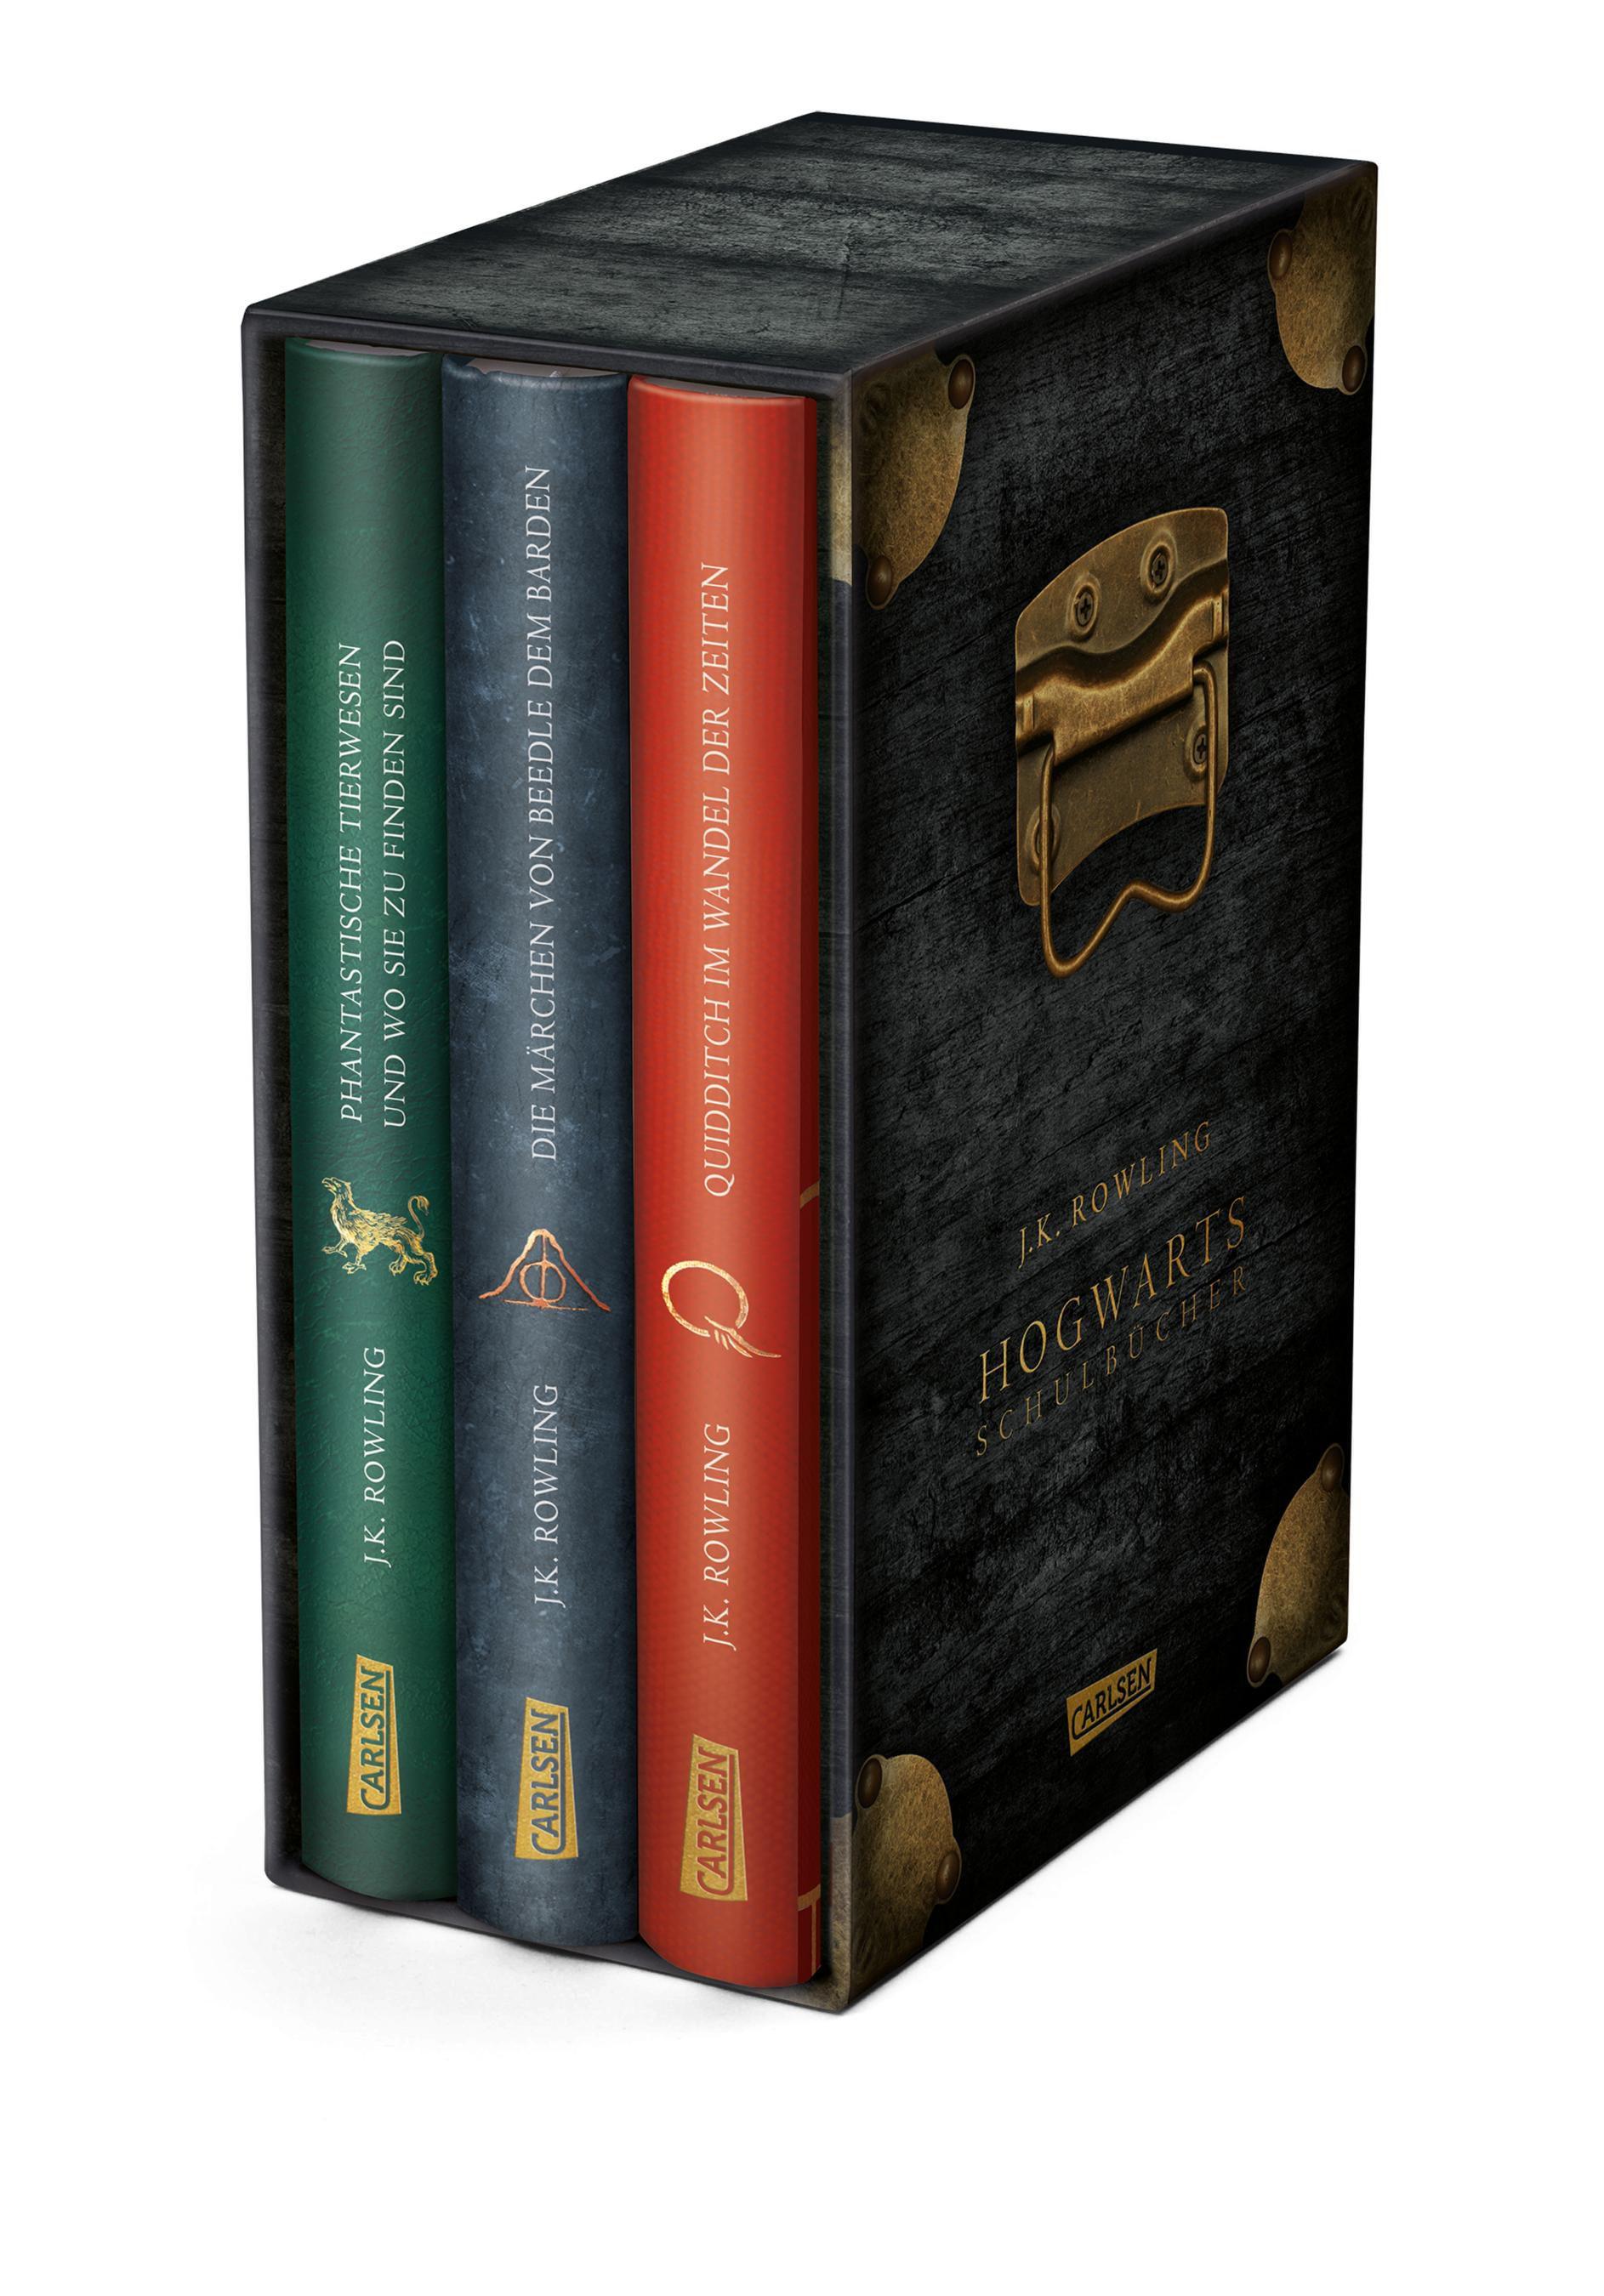 Hogwarts-Schulbücher: Die Hogwarts-Schulbücher im Schuber Endlich auch für Muggel! | Ideal zum Verschenken an wissbegierige Hexen, Magier und alle Harry-Potter-Fans